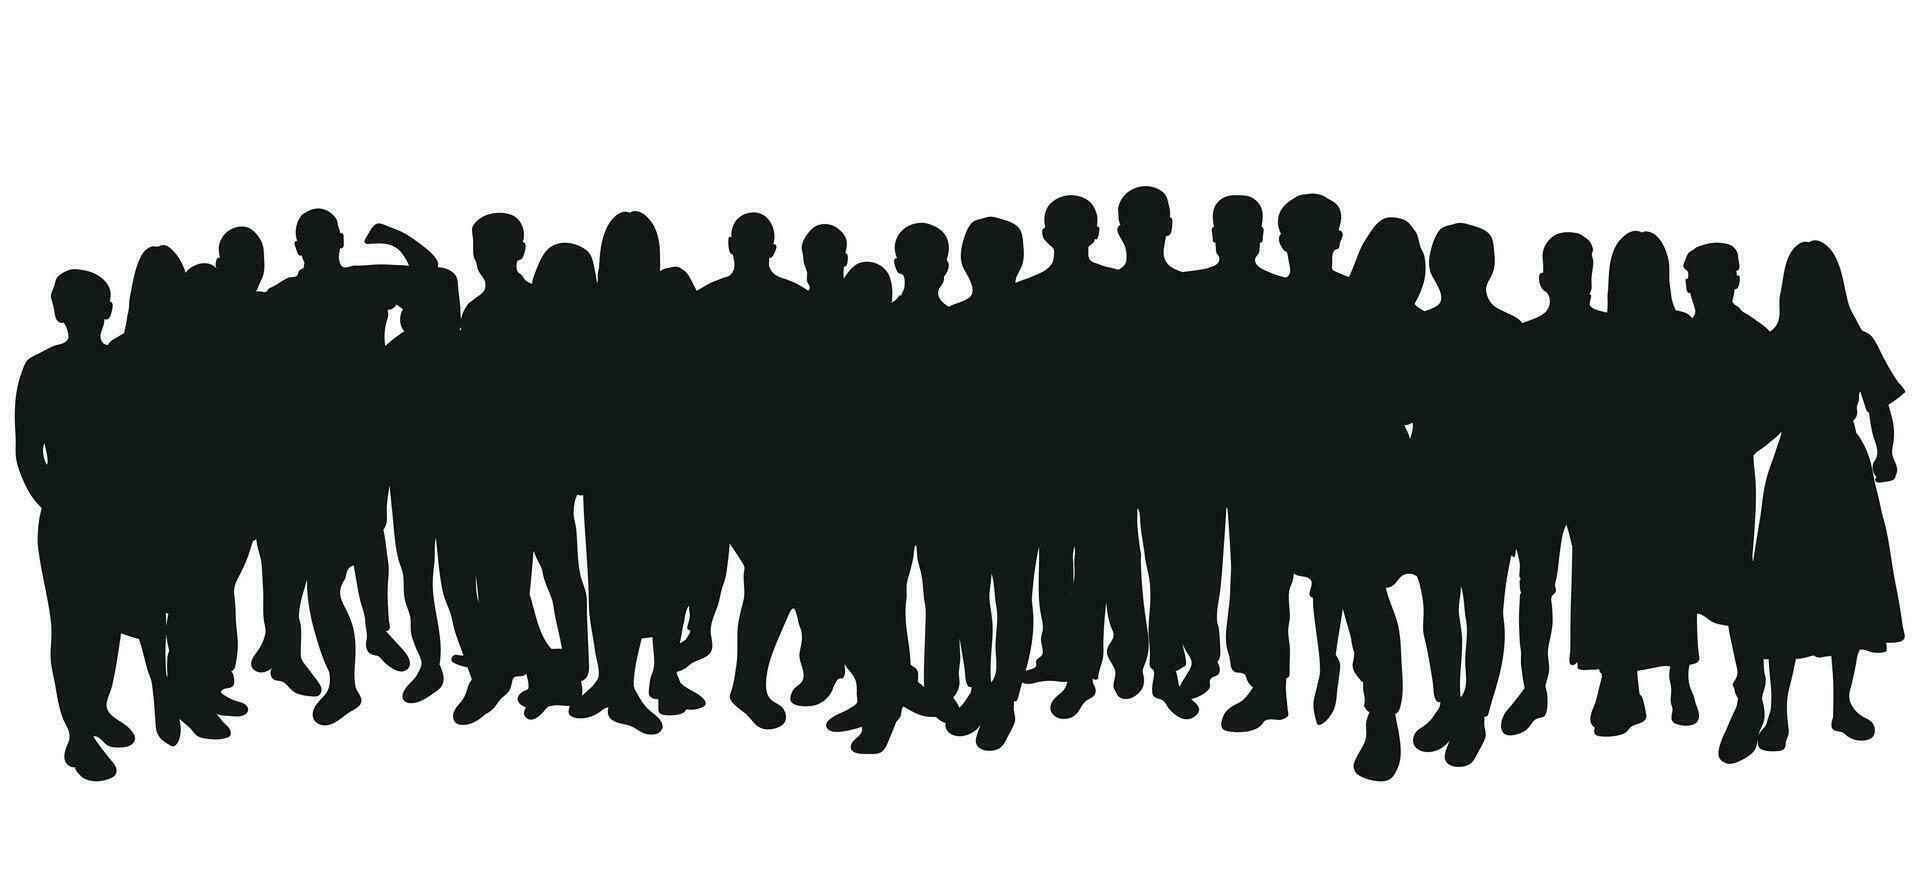 Bild skizzieren Gliederung von das Silhouette von das Menge, Gruppe von Personen. Jugend, Studenten, Geschäft, Arbeitskräfte, Publikum, Warteschlange, Migration, Flüchtling vektor